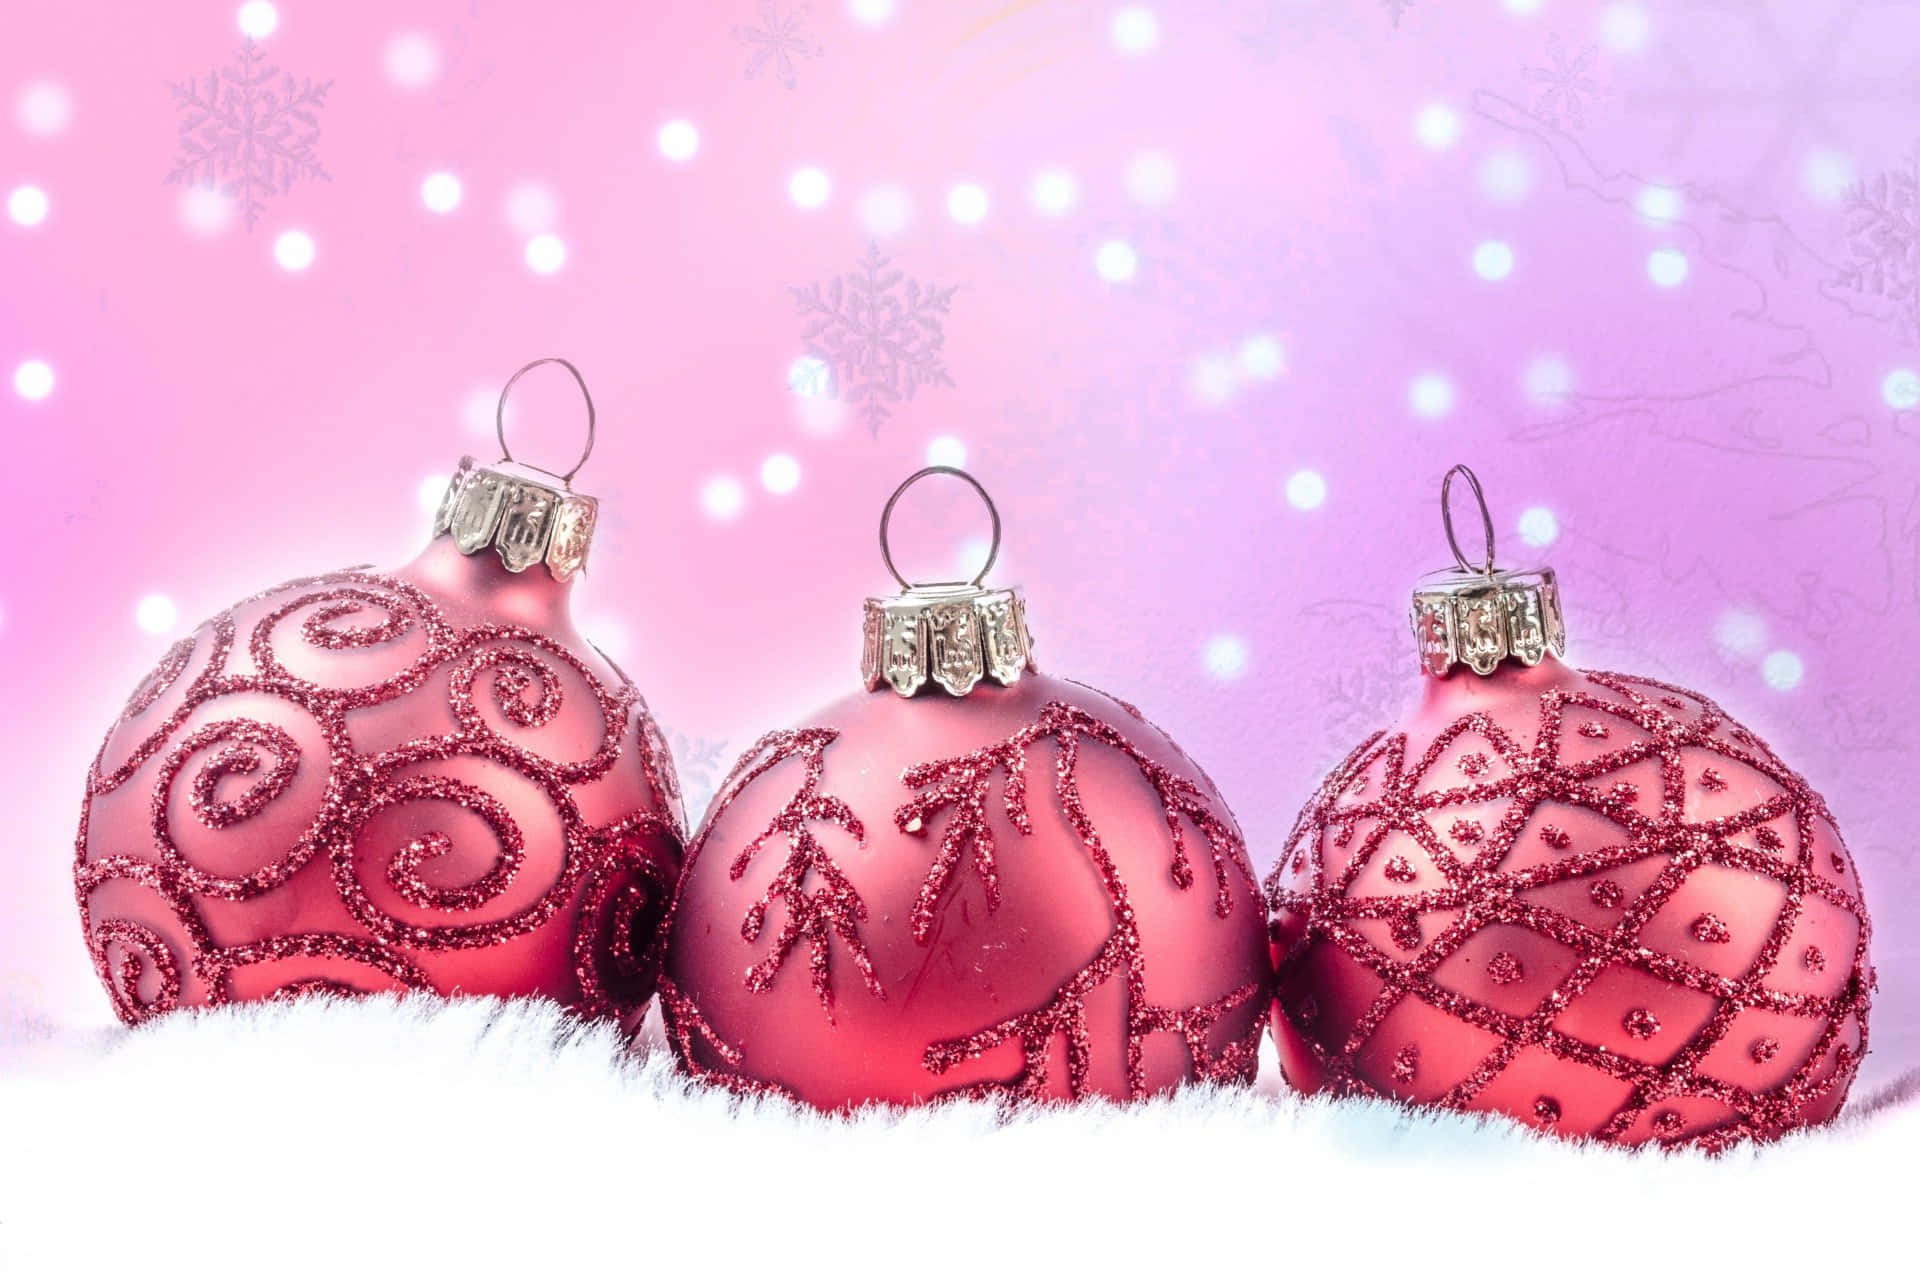 Feiernsie Weihnachten In Einer Festlichen Pinkfarbenen Traumwelt Wallpaper